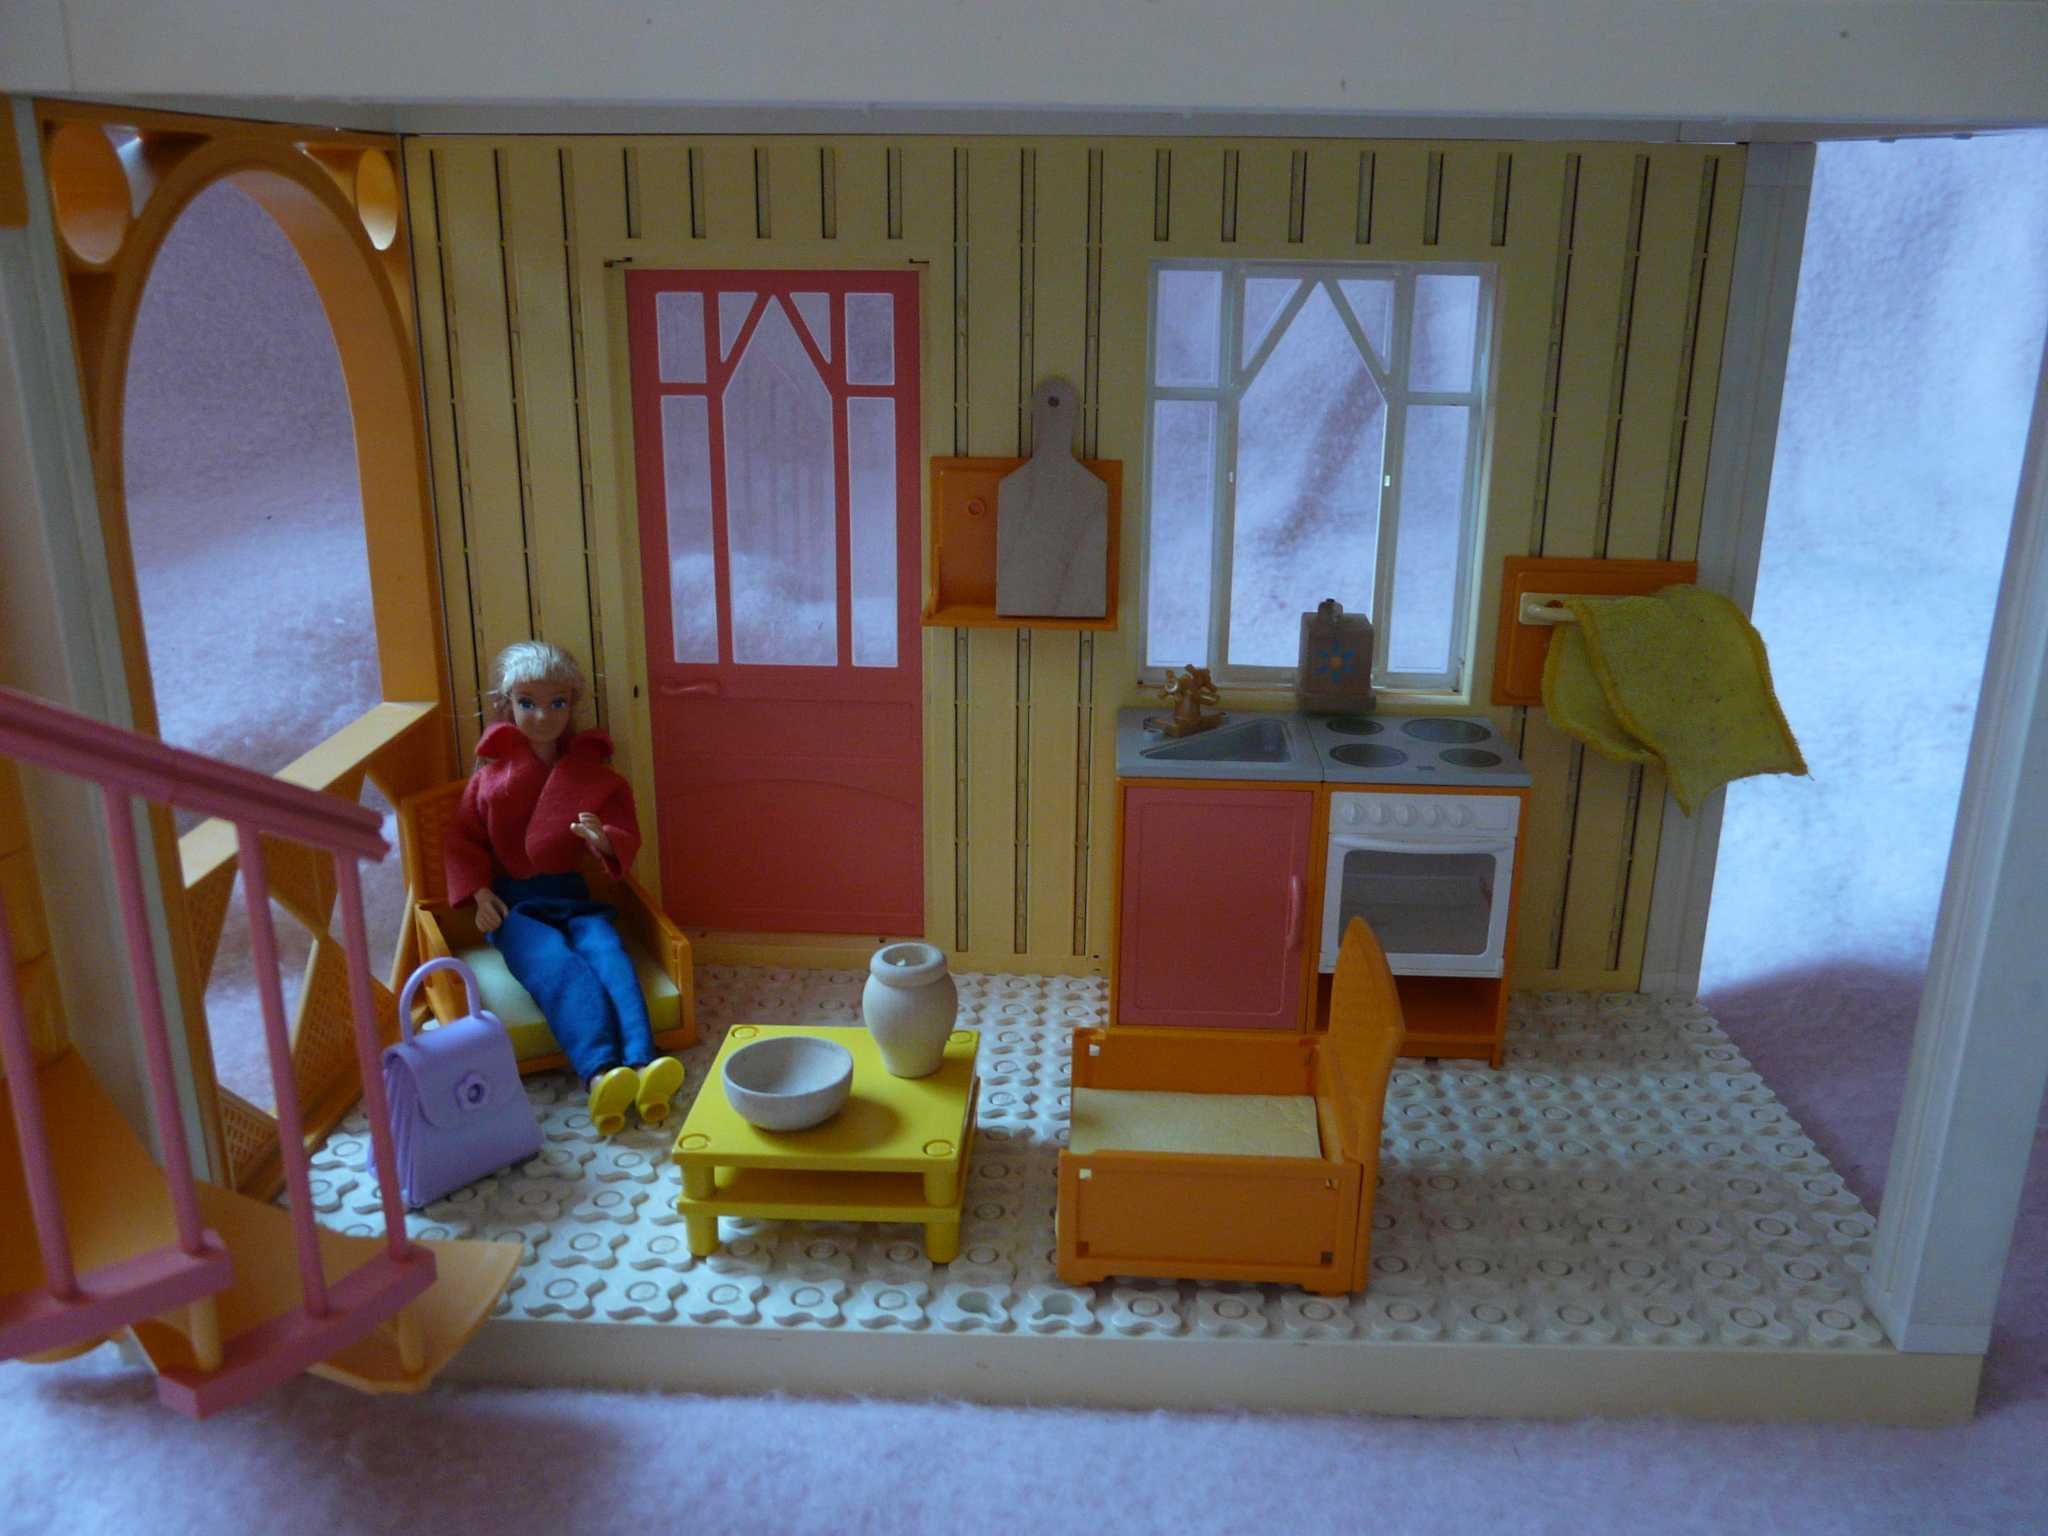 Lego scala belville friends duży domek wys. 60 cm kuchnia mebelki